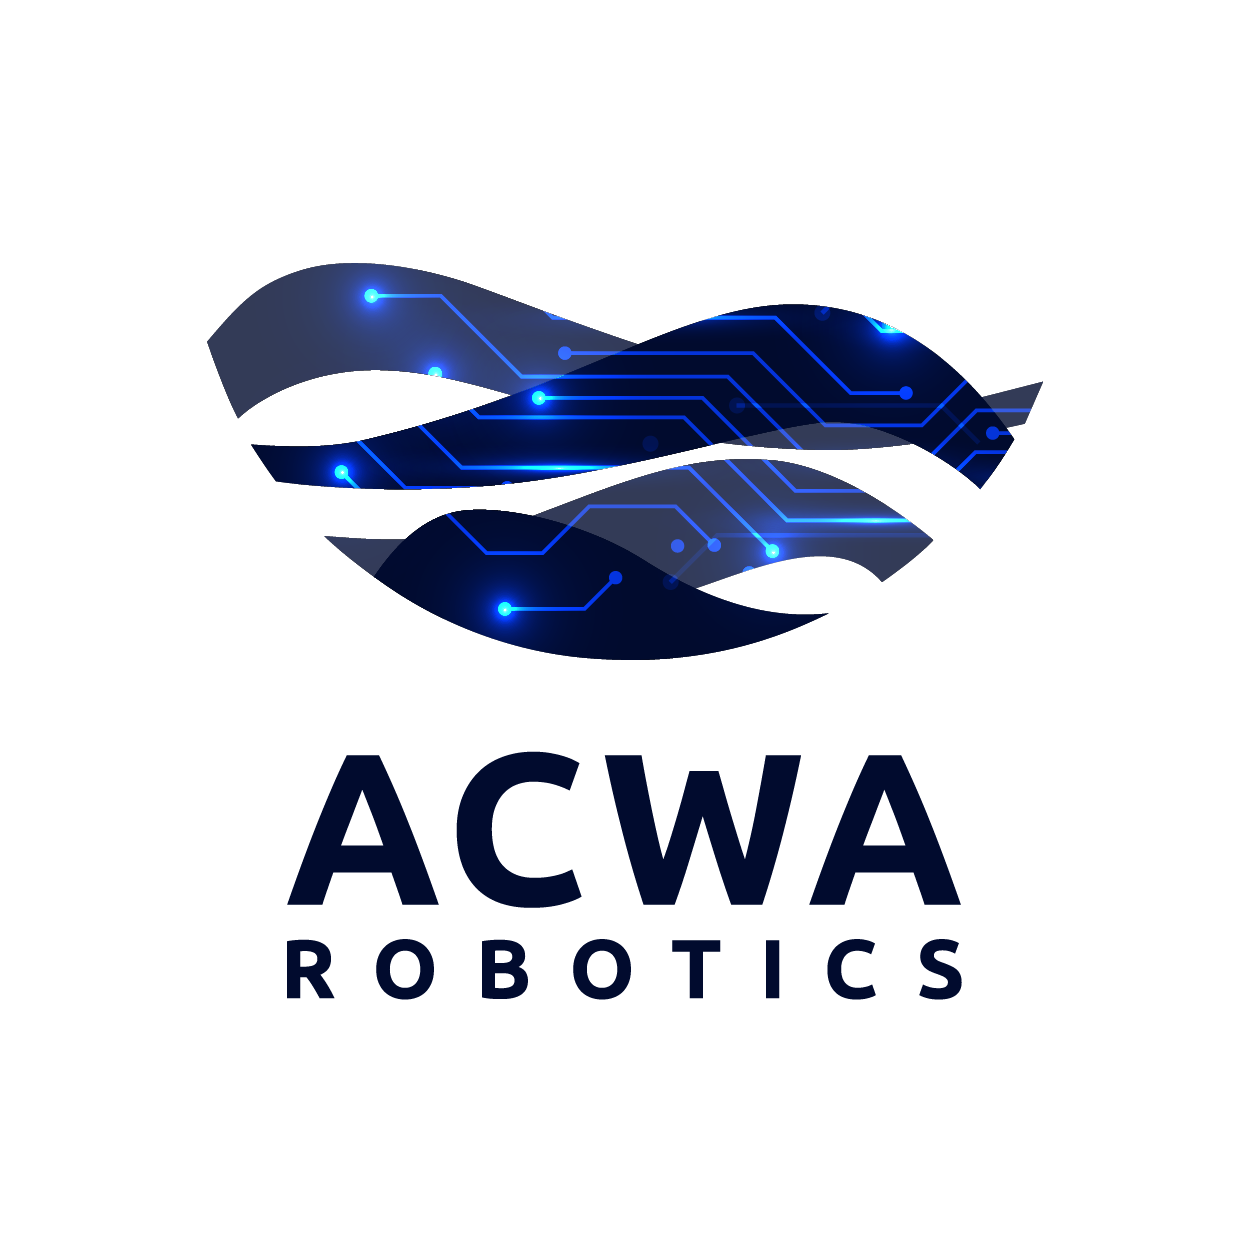 Acwa Robotics - logo du client, positionné en bas de page pour asseoir la lecture et illustrer l'article